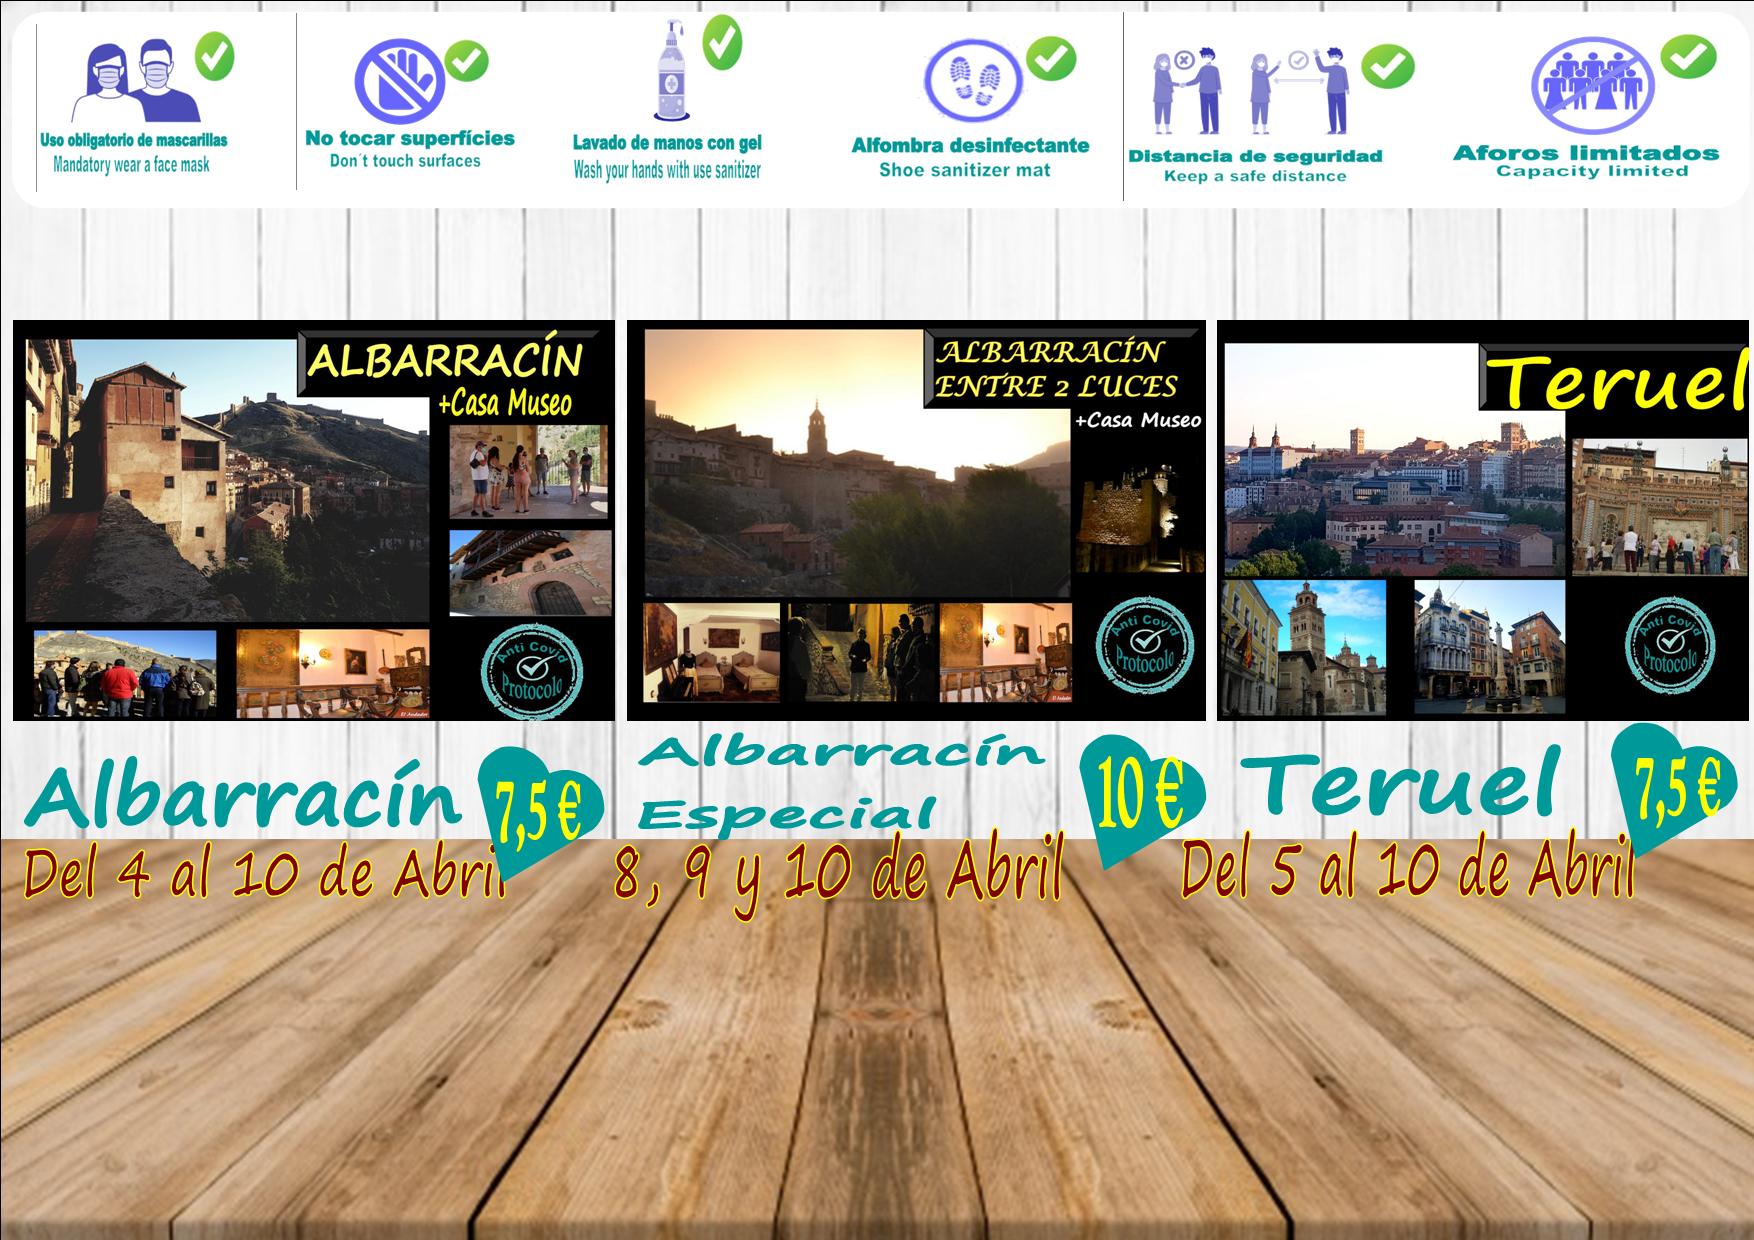 Planes de visitas guiadas en Albarracín, Teruel y Albarracín Especial! Del 4 al 10 de Abril!